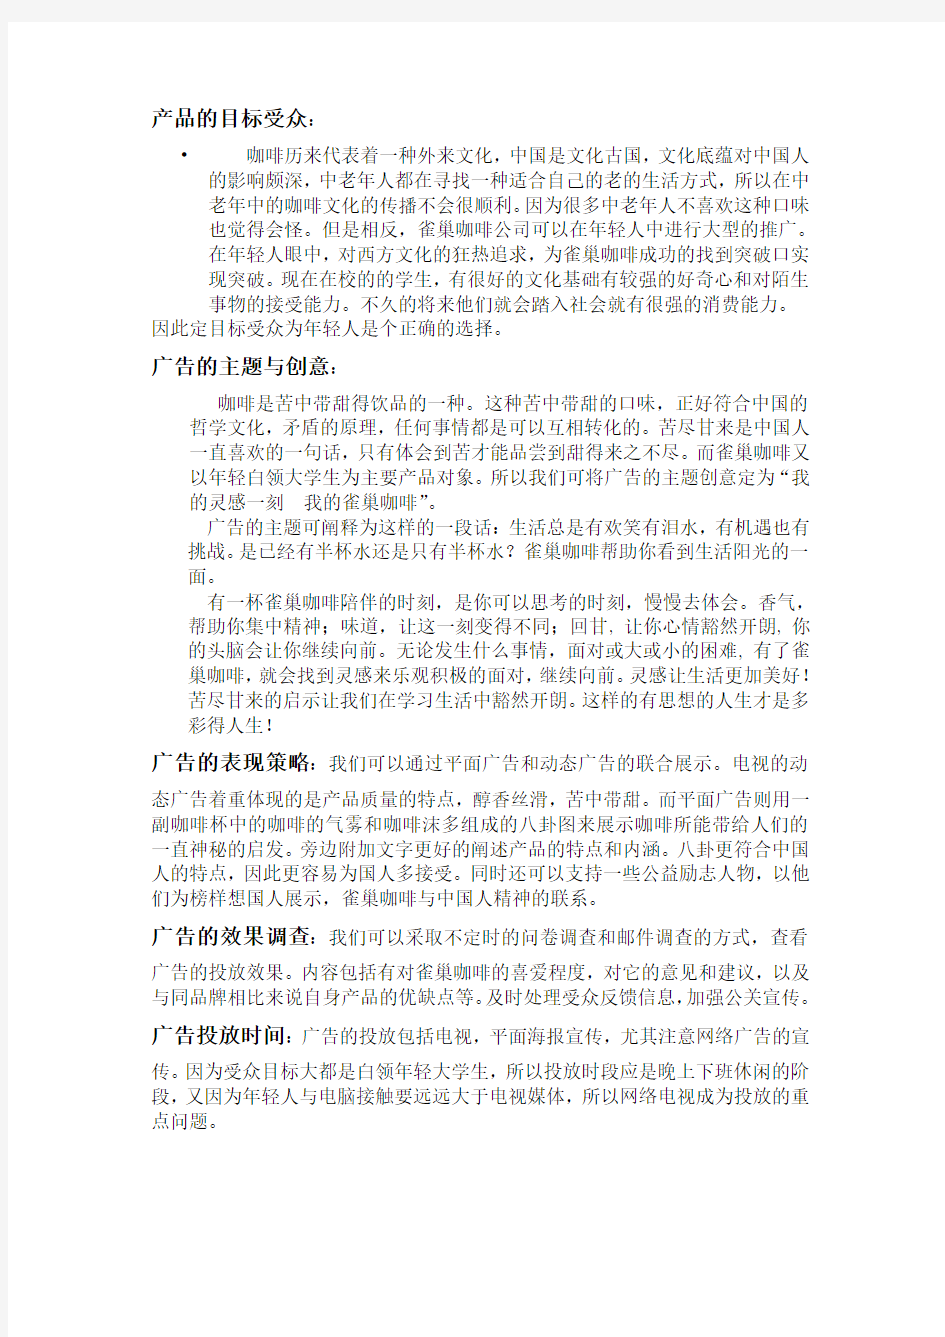 雀巢咖啡在中国的广告文案策划